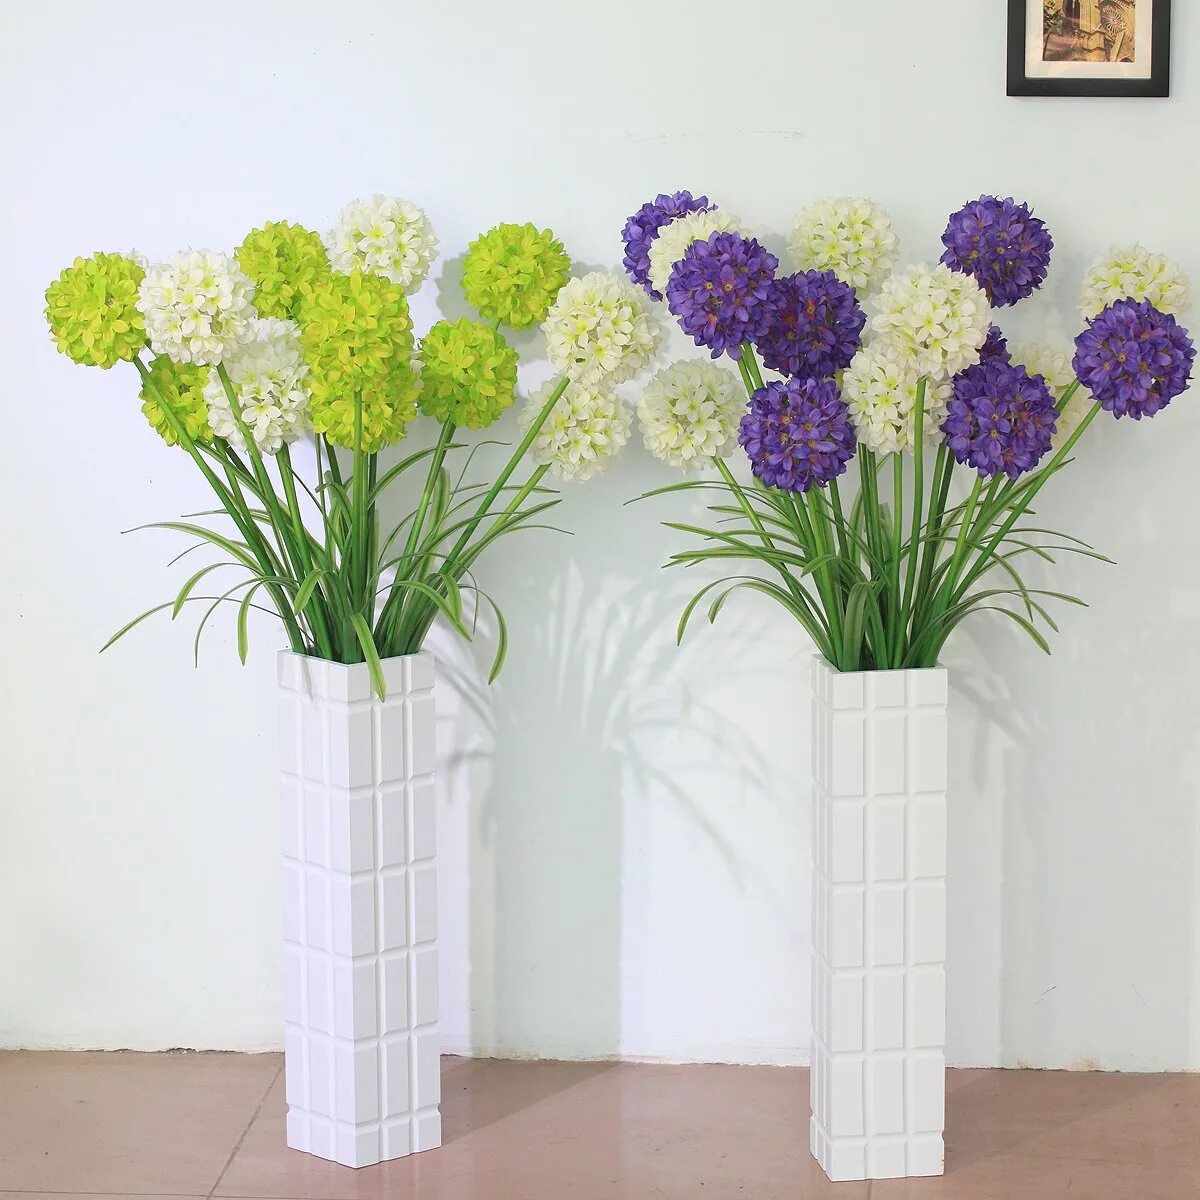 Что кроме цветов можно поставить в вазу. Ваза с искусственными цветами в интерьере. Искусственные цветы в напольной вазе. Ваза с цветами искусственными декор. Искусственные цветы для напольной вазы.